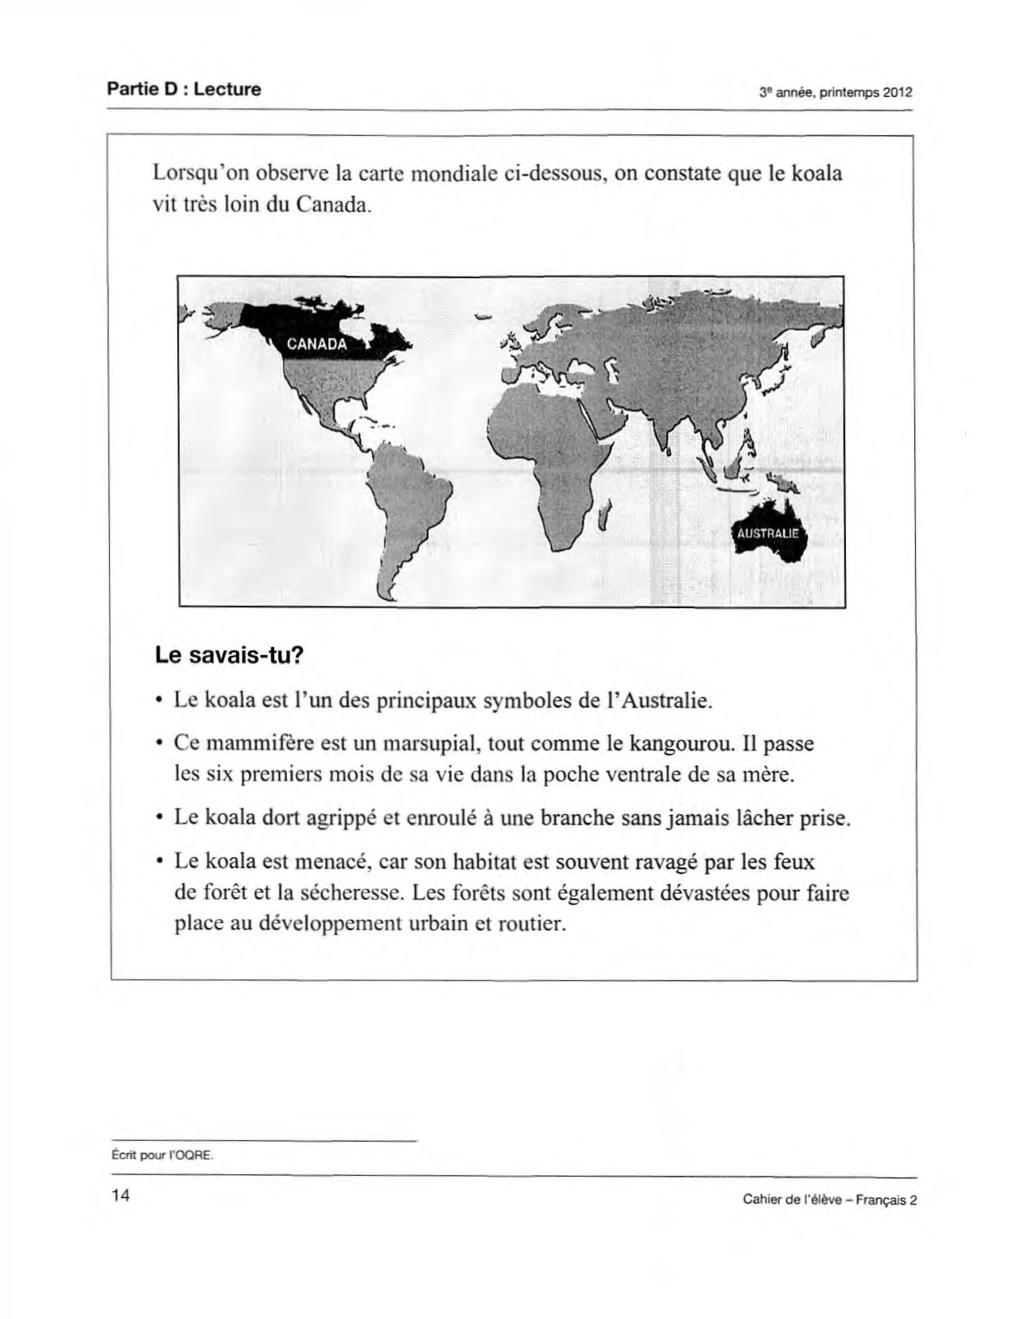 Partie D : Lecture 3 année, printemps 2012 Lorsqu on observe la carte mondiale ci-dessous, on constate que le koala vit très loin du Canada. Le savais-tu?